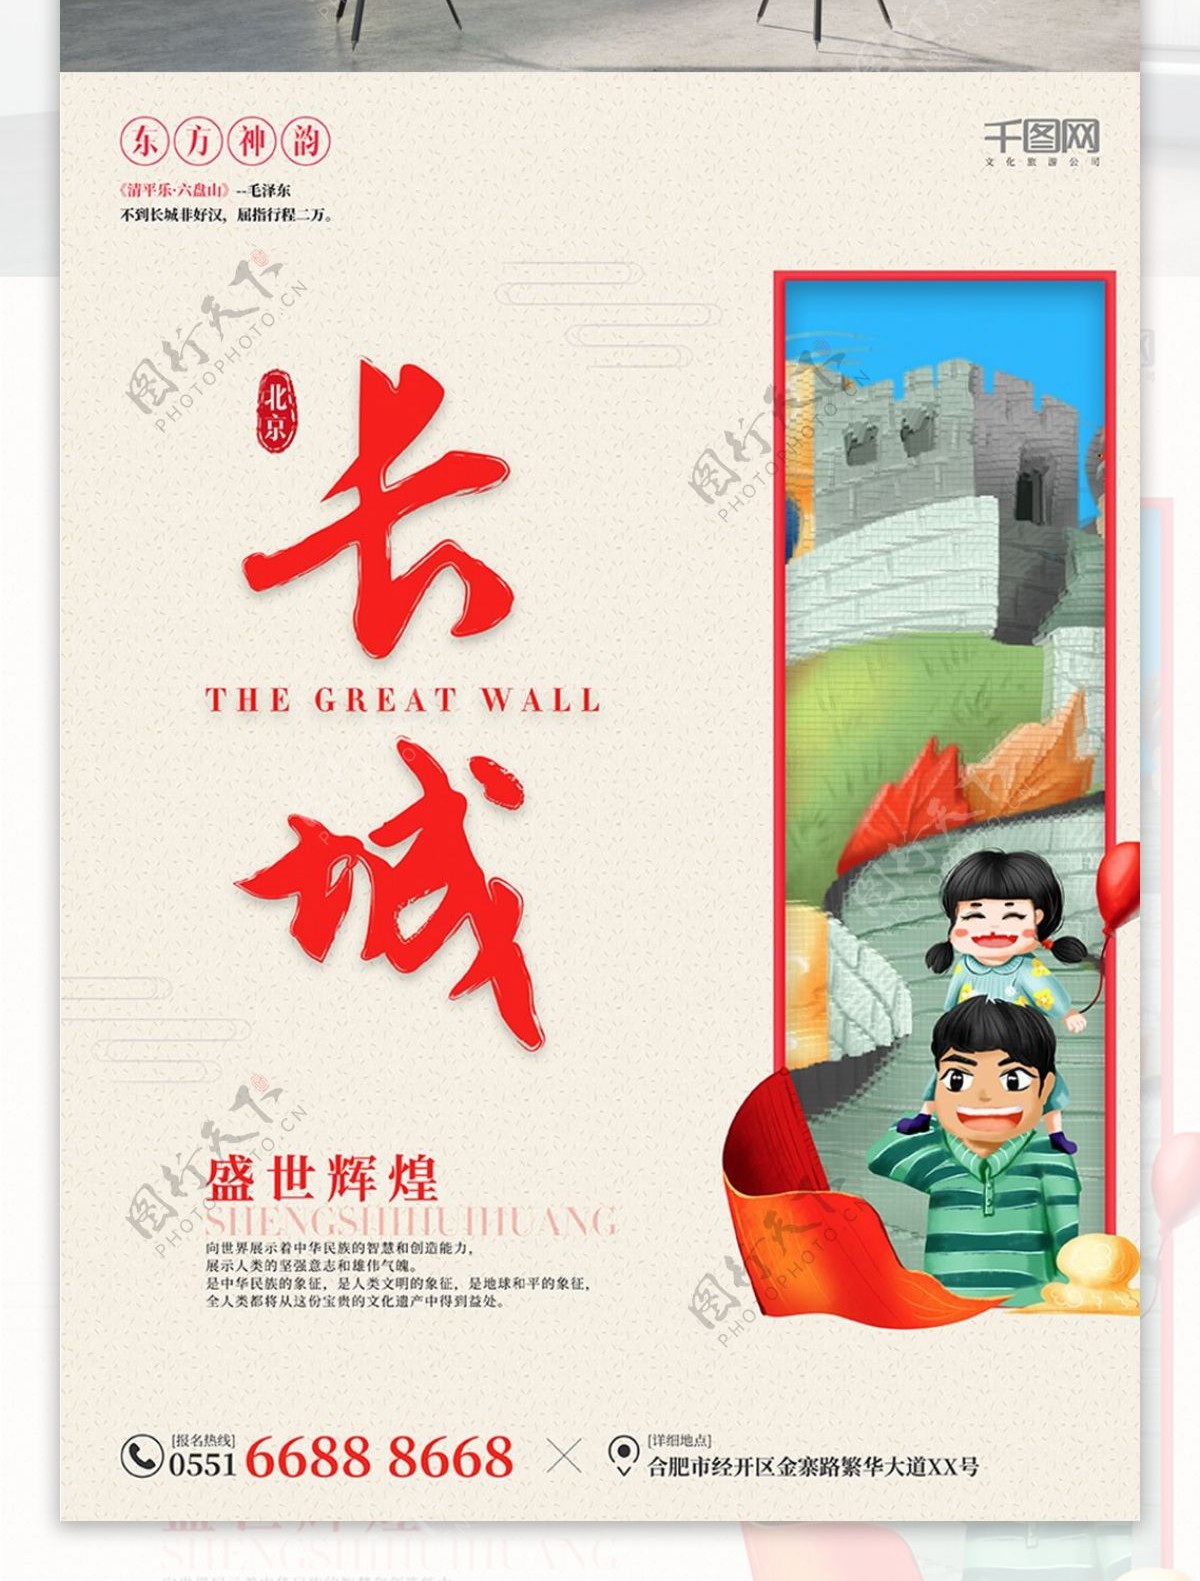 简约红色相框复古北京万里长城旅游文化海报